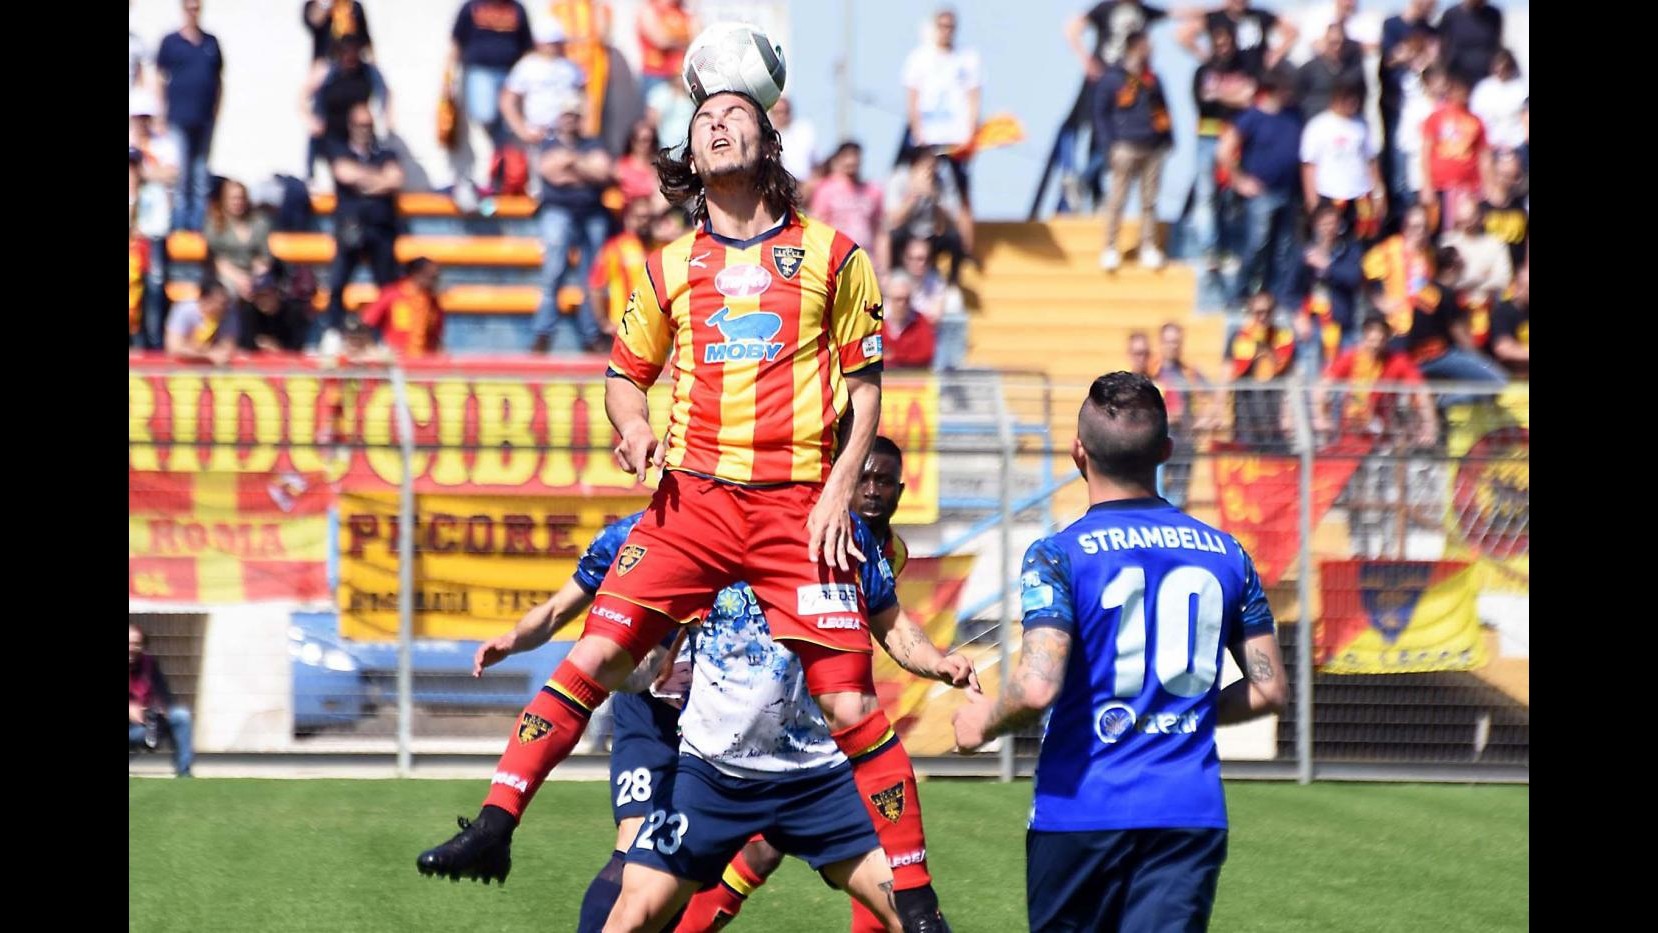 FOTO LegaPro, Matera-Lecce finisce 1-1